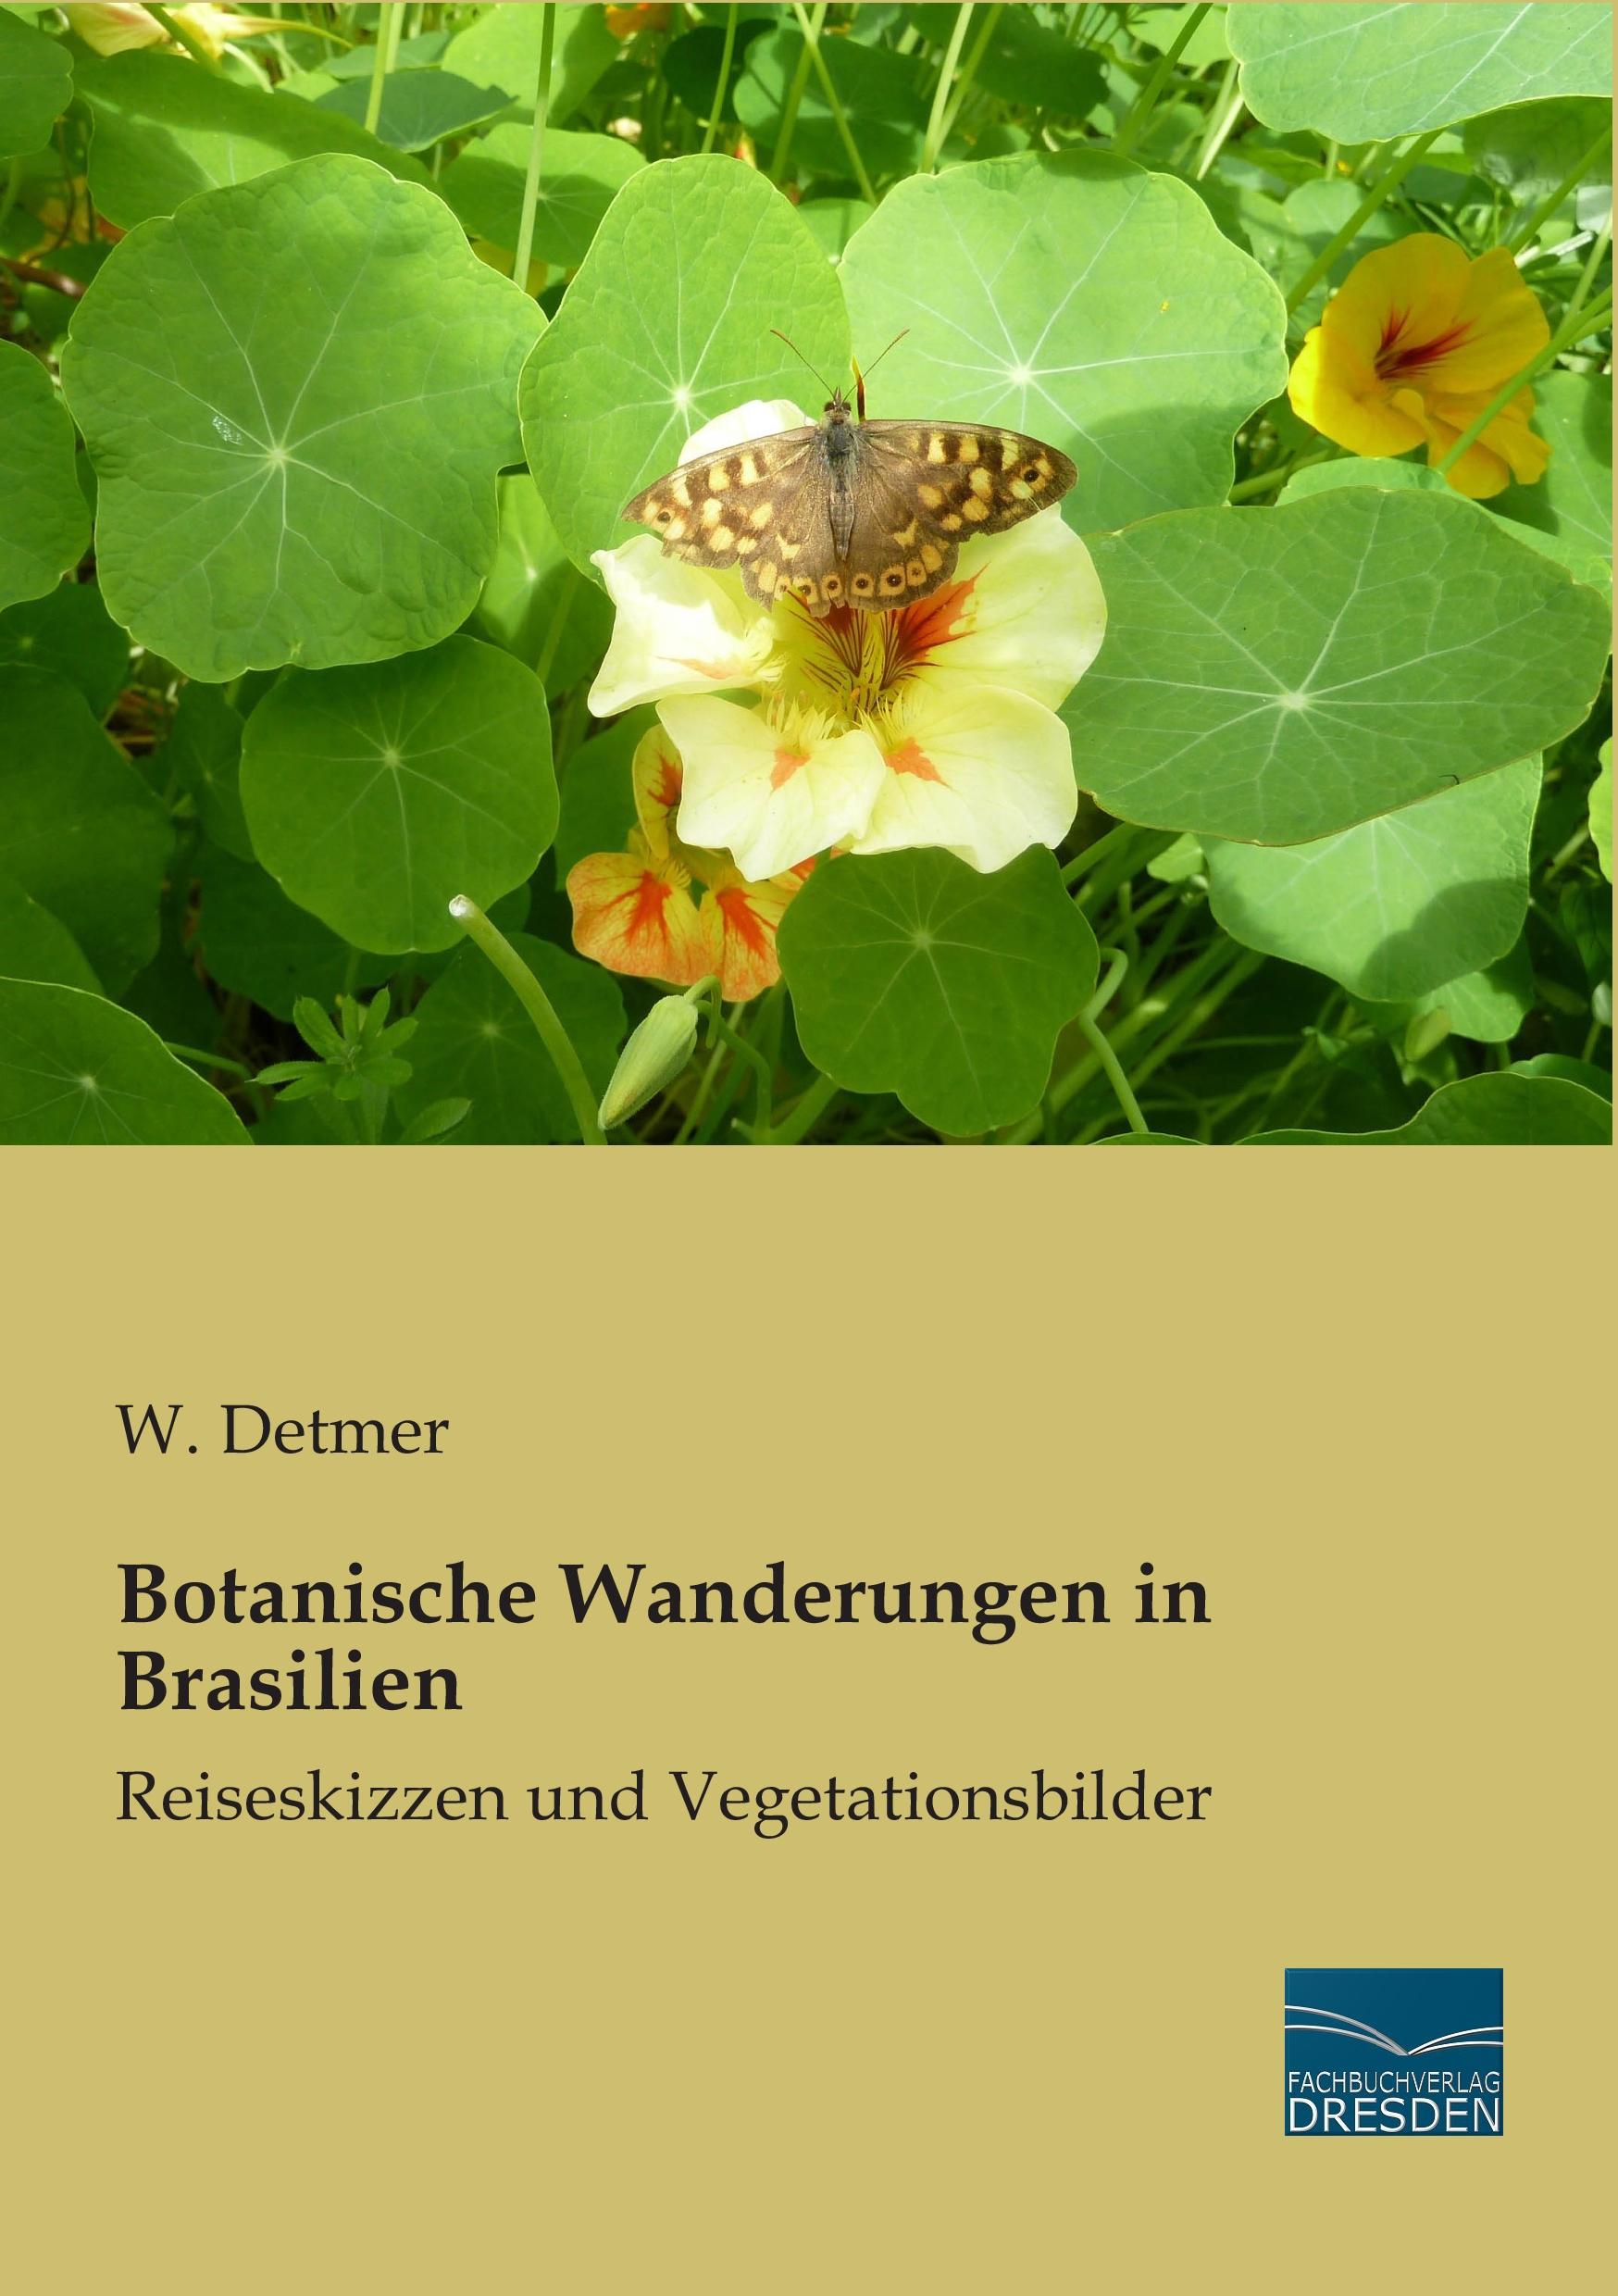 Botanische Wanderungen in Brasilien / Reiseskizzen und Vegetationsbilder / W. Detmer / Taschenbuch / Paperback / 196 S. / Deutsch / 2015 / Fachbuchverlag-Dresden / EAN 9783956927300 - Detmer, W.